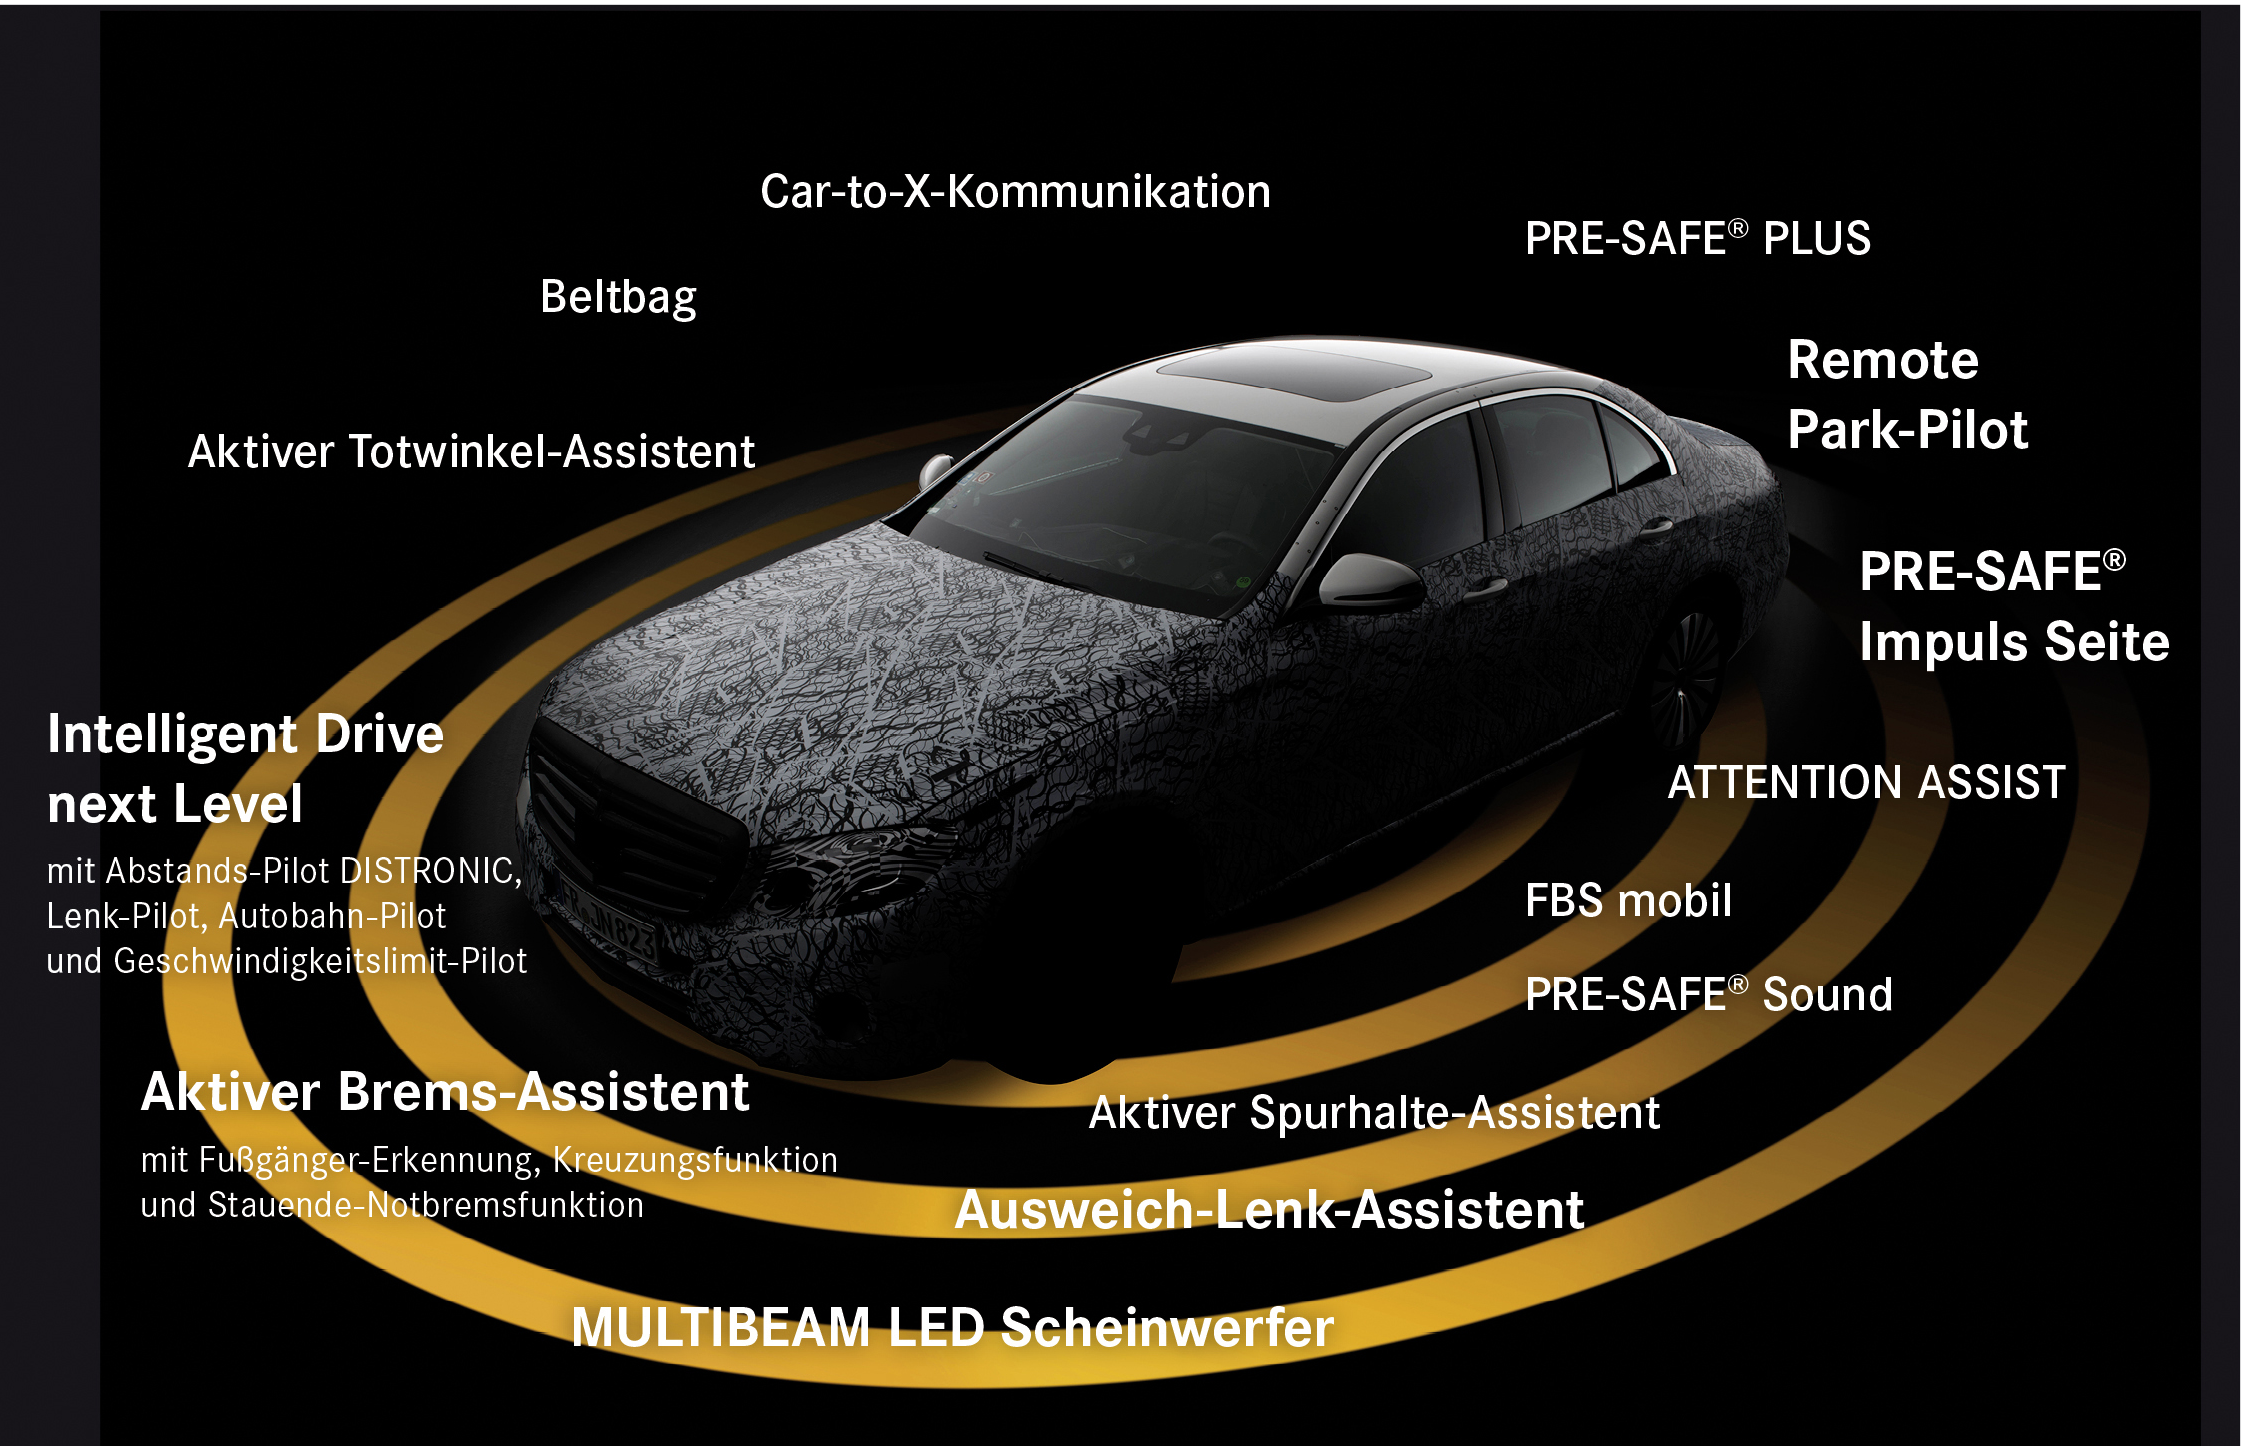 Totwinkel-Assistent  Mercedes-Benz Intelligent Drive